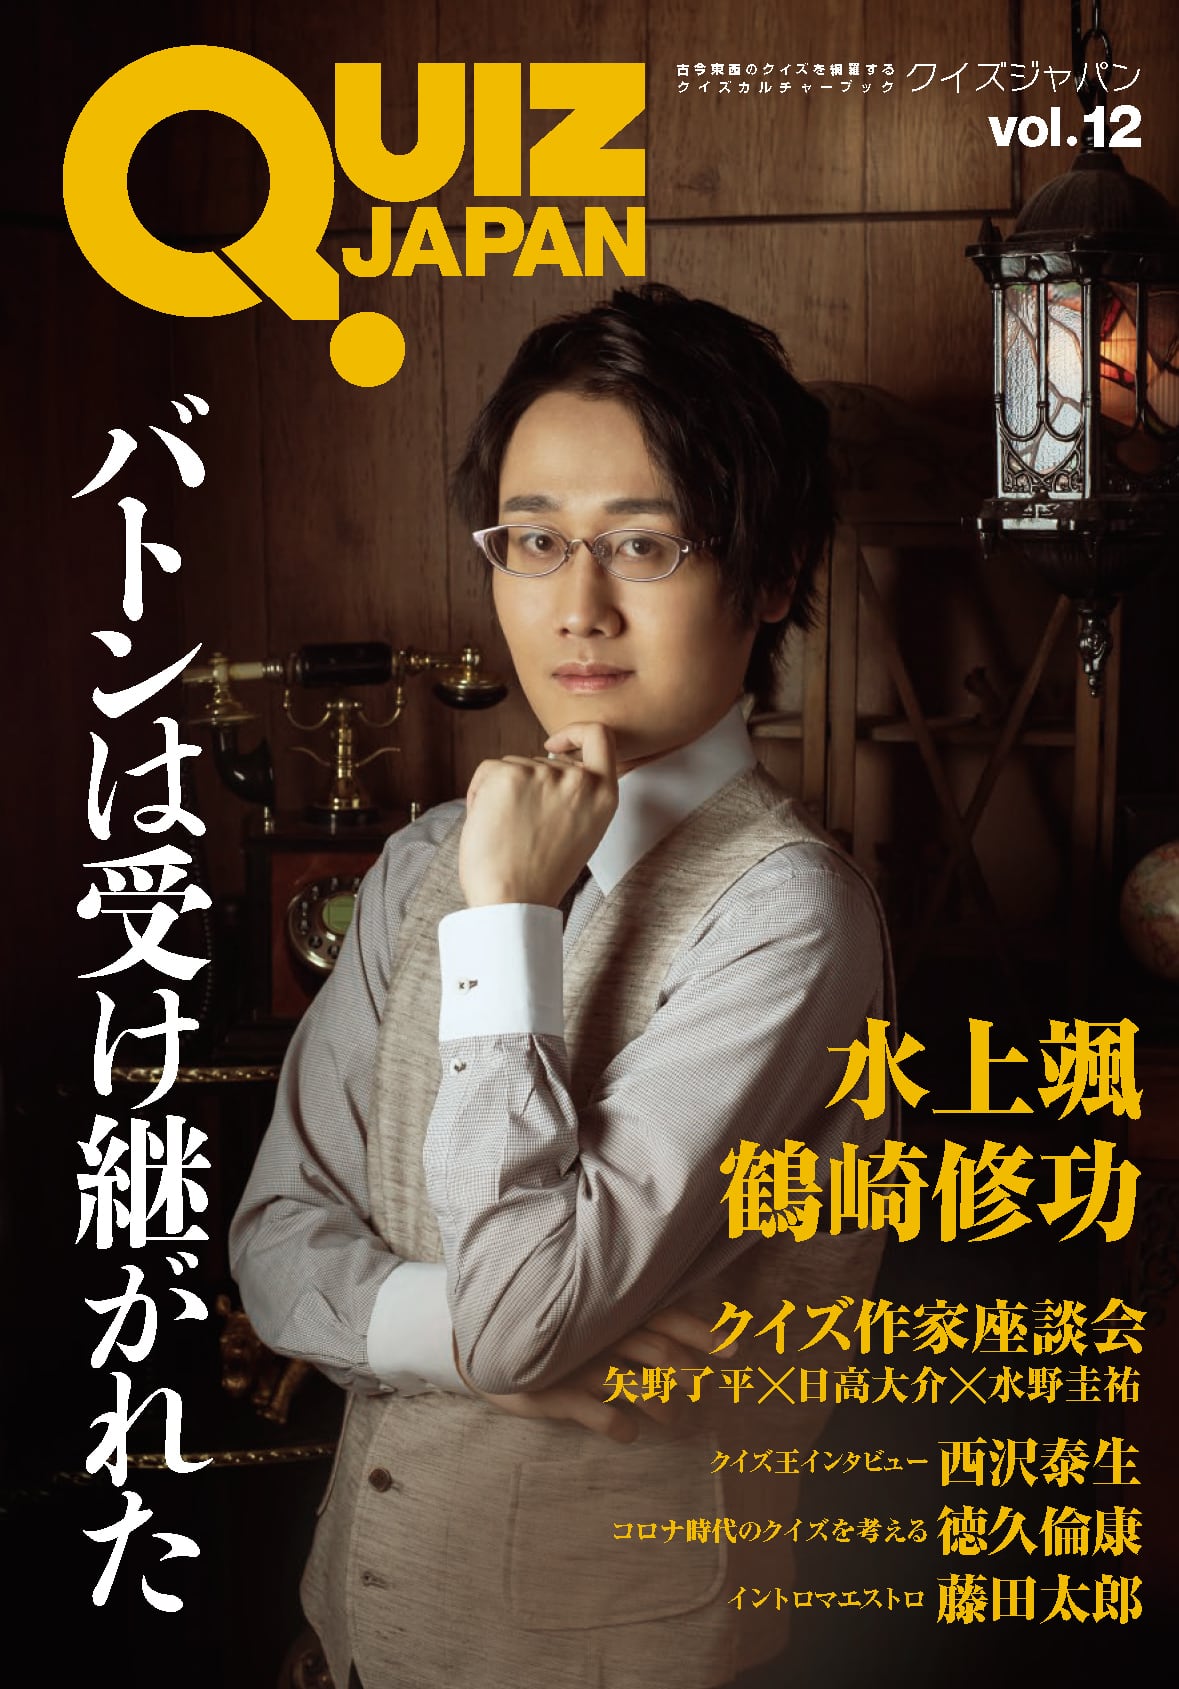 QUIZ JAPAN vol.12 | QUIZ JAPAN SHOPPING